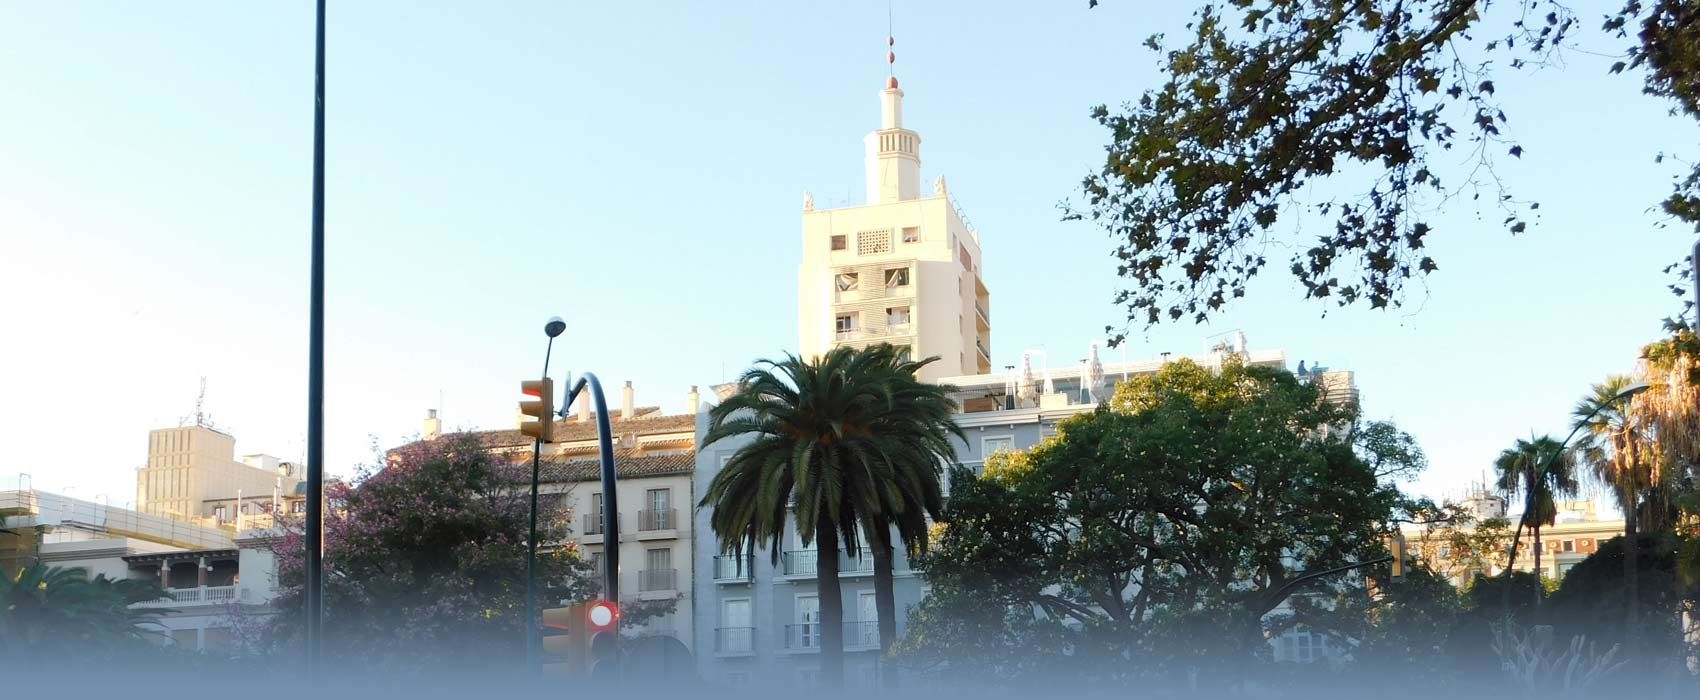 Das Stadtzentrum von Malaga